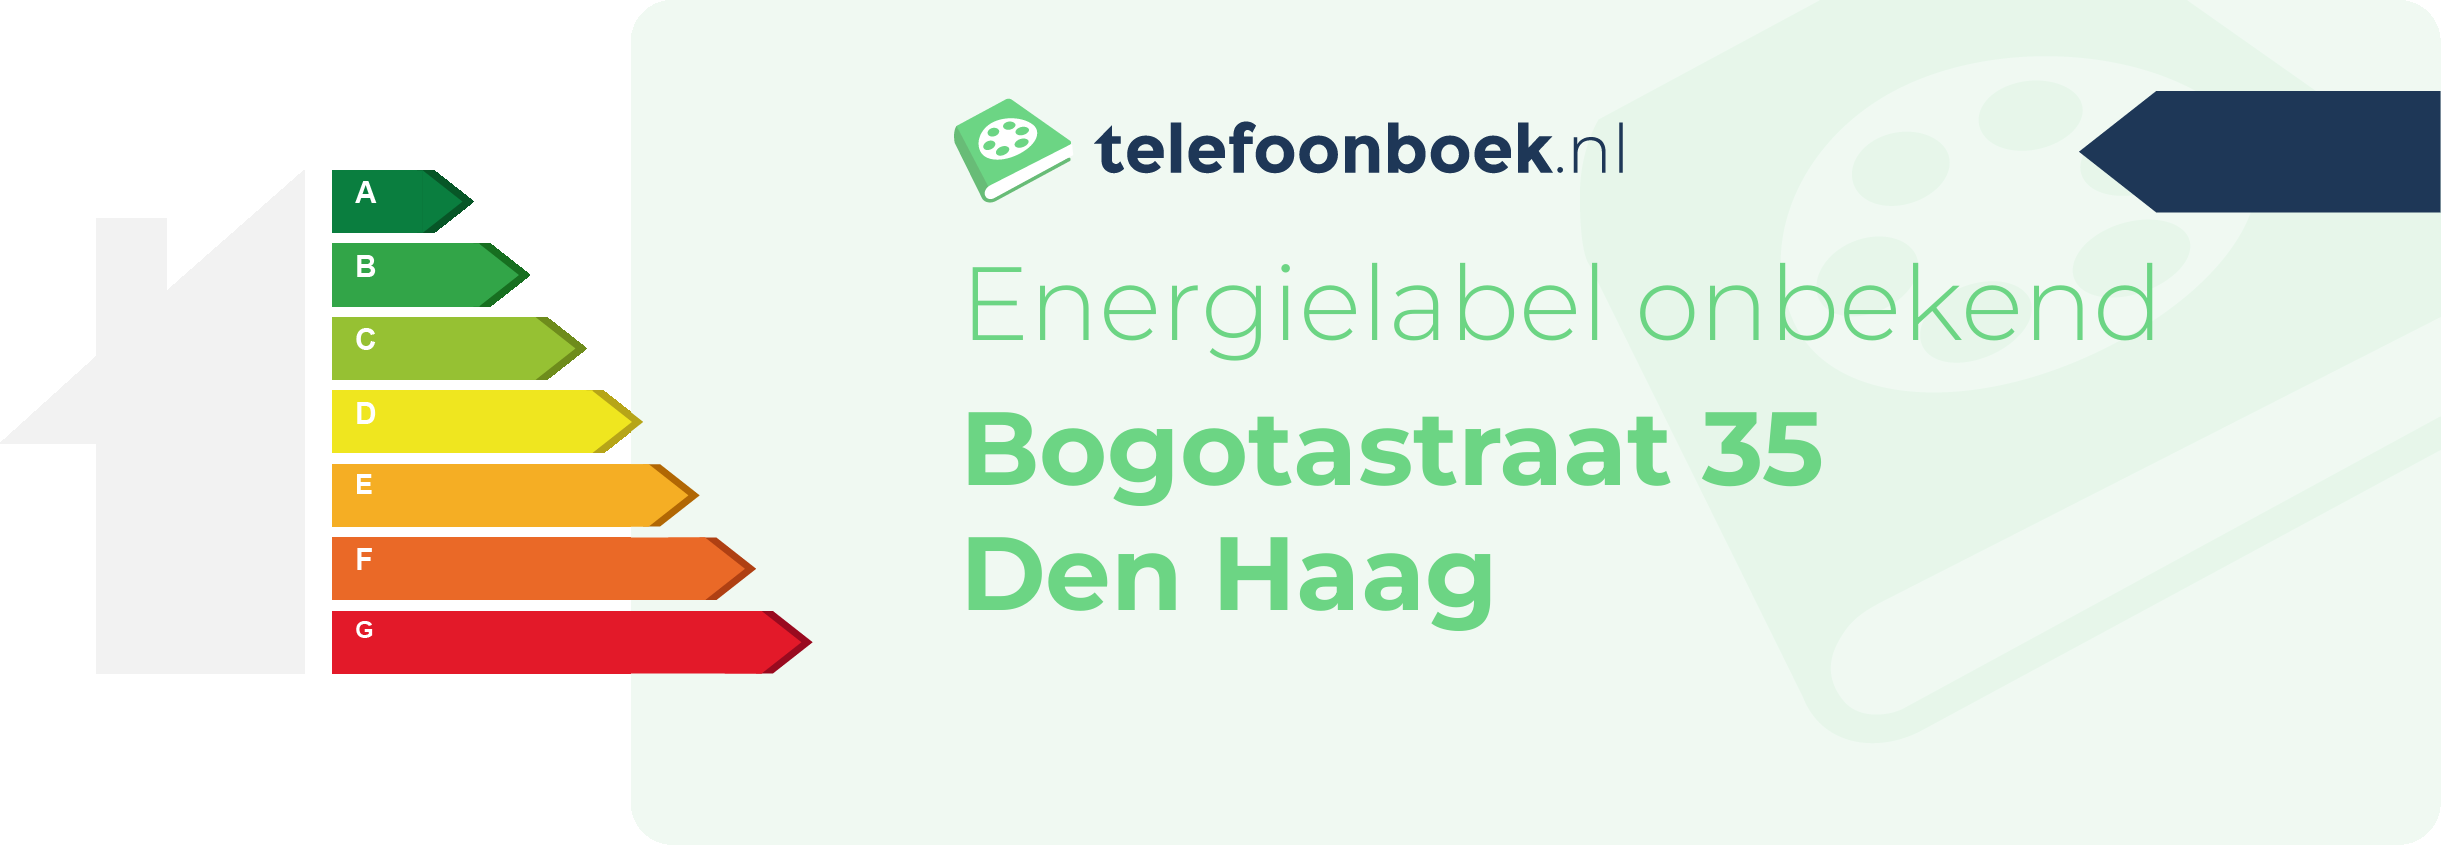 Energielabel Bogotastraat 35 Den Haag